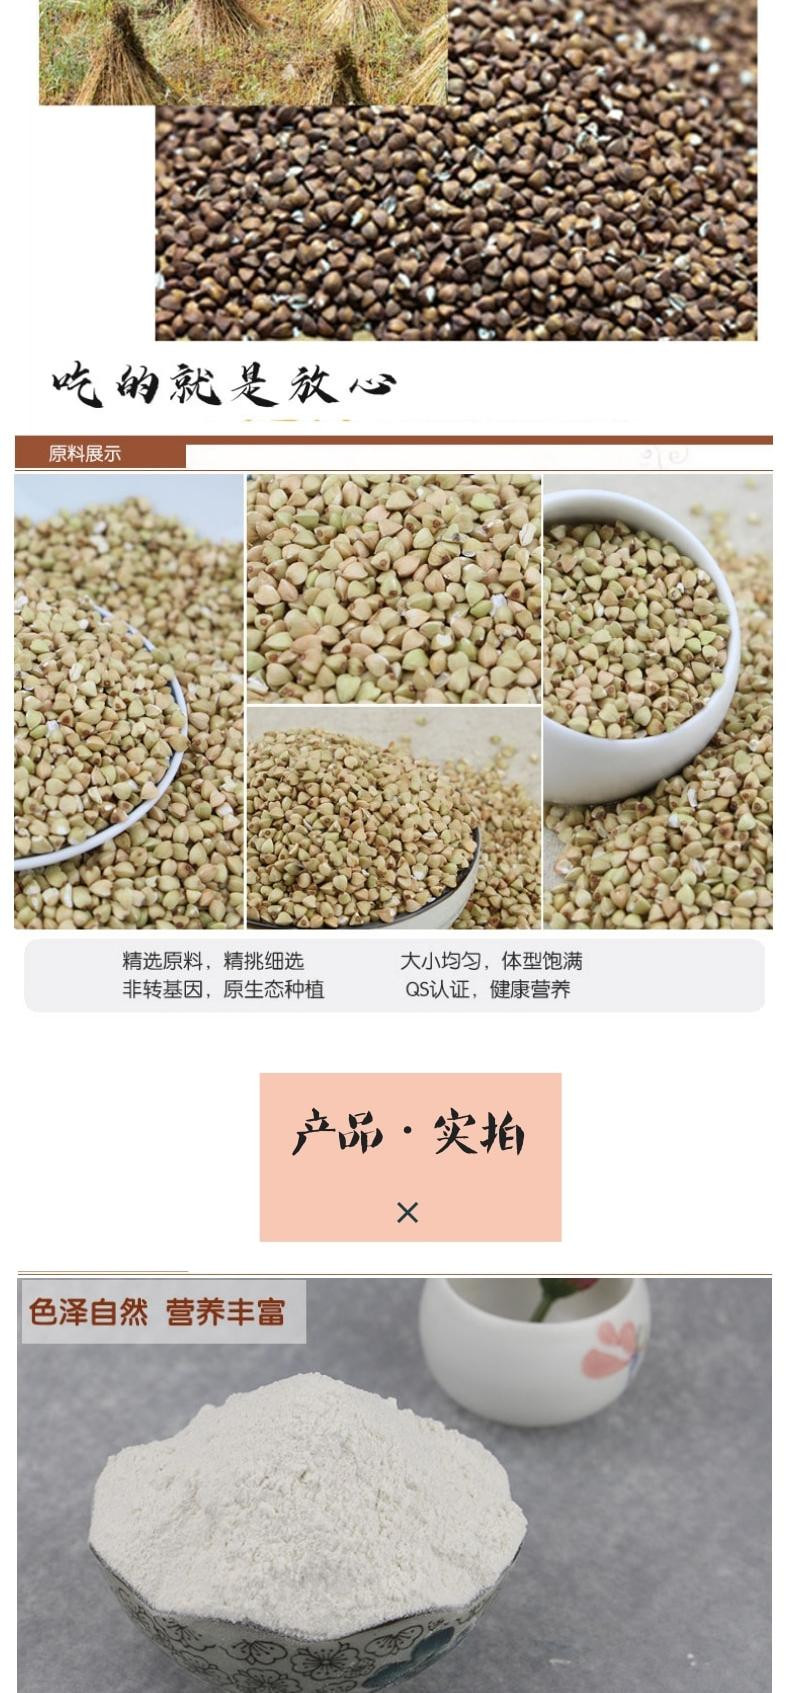 薛家梁 老磨坊荞麦粉2.4kg【晋乡情·吕梁】营养健康